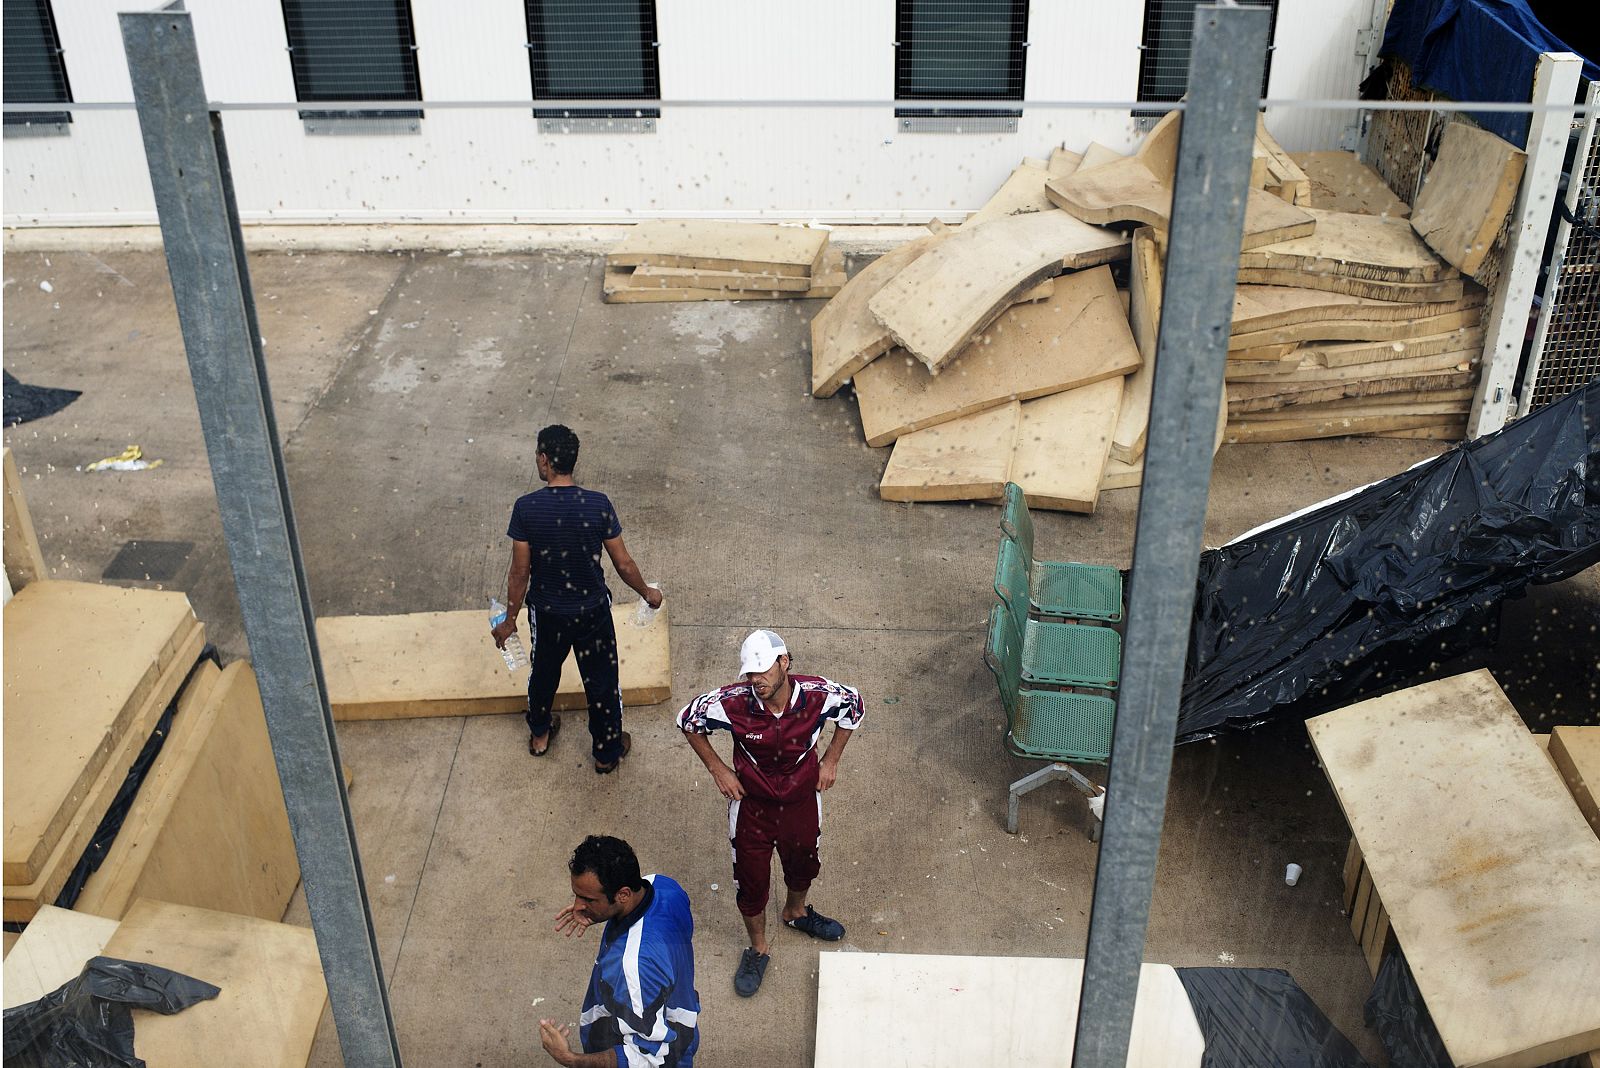 Fotografía de archivo de inmigrantes en el centro de detención temporal de Lampedusa, Italia, en octubre de 2013